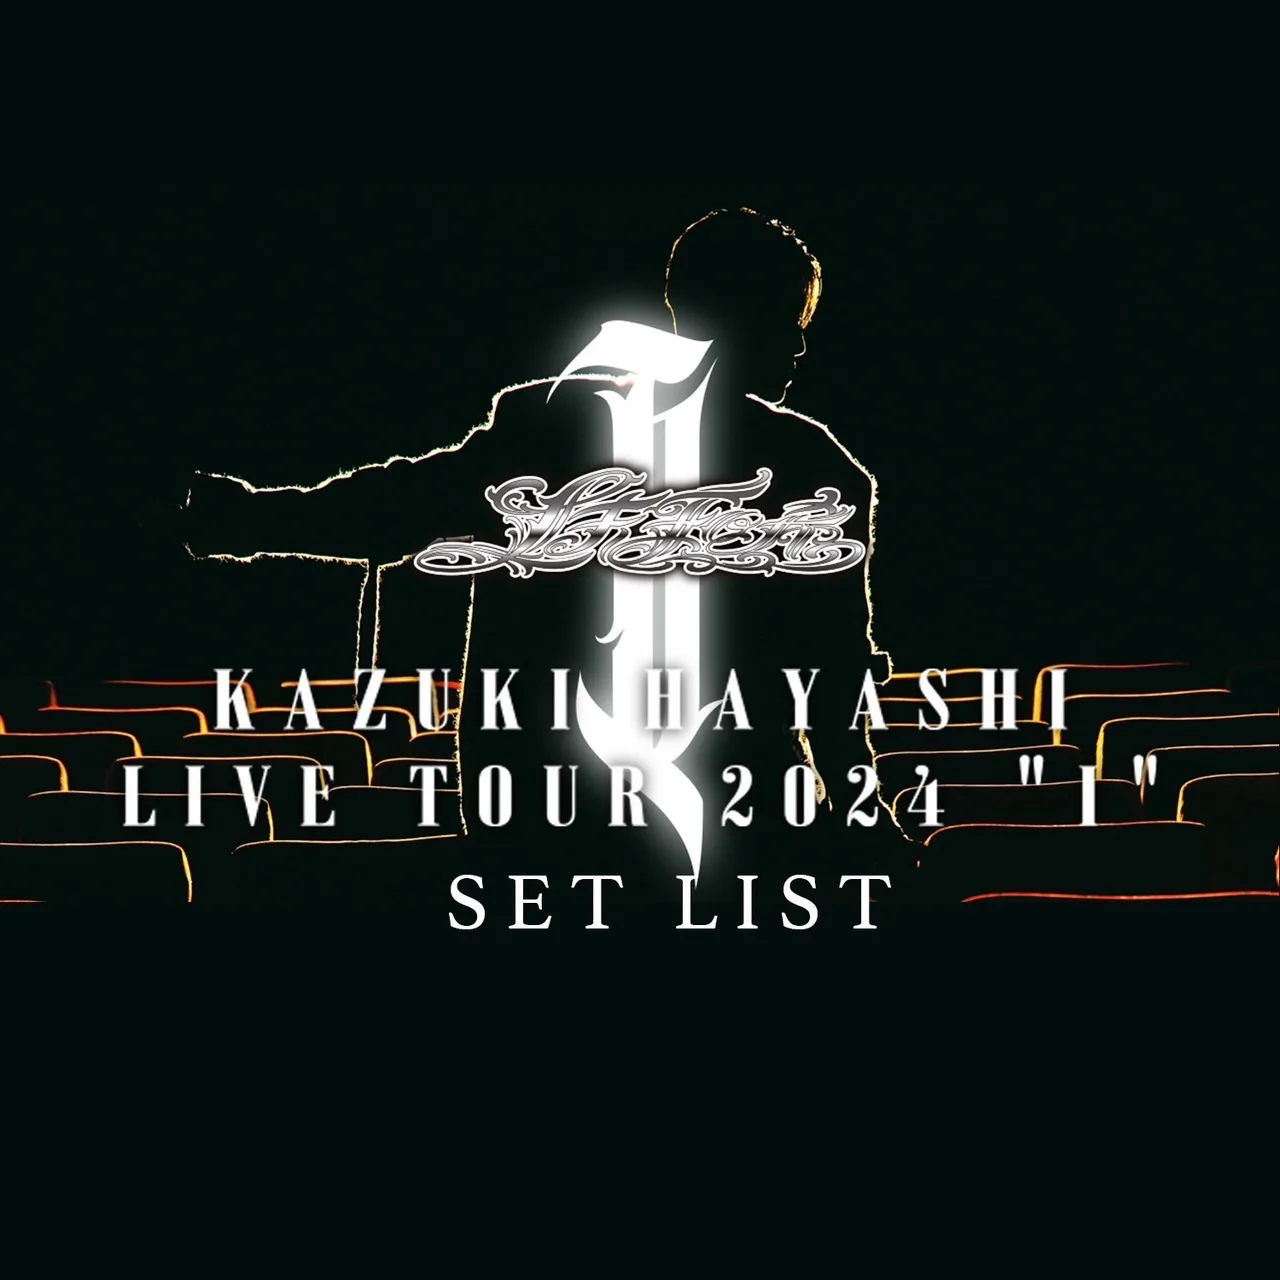 『林 和希 LIVE TOUR 2024 “I"』公演セットリストのプレイリストを各音楽配信サービスにて公開決定！